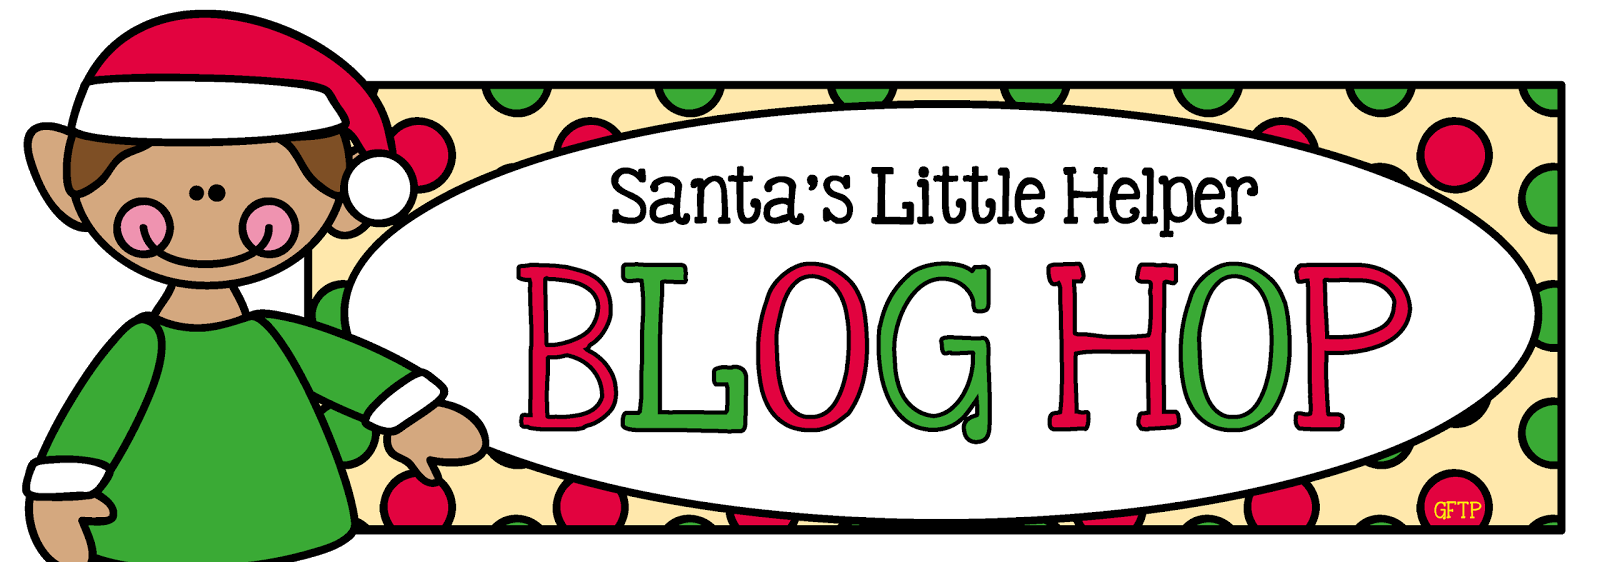 1. "Santa's Little Helper" - wide 4